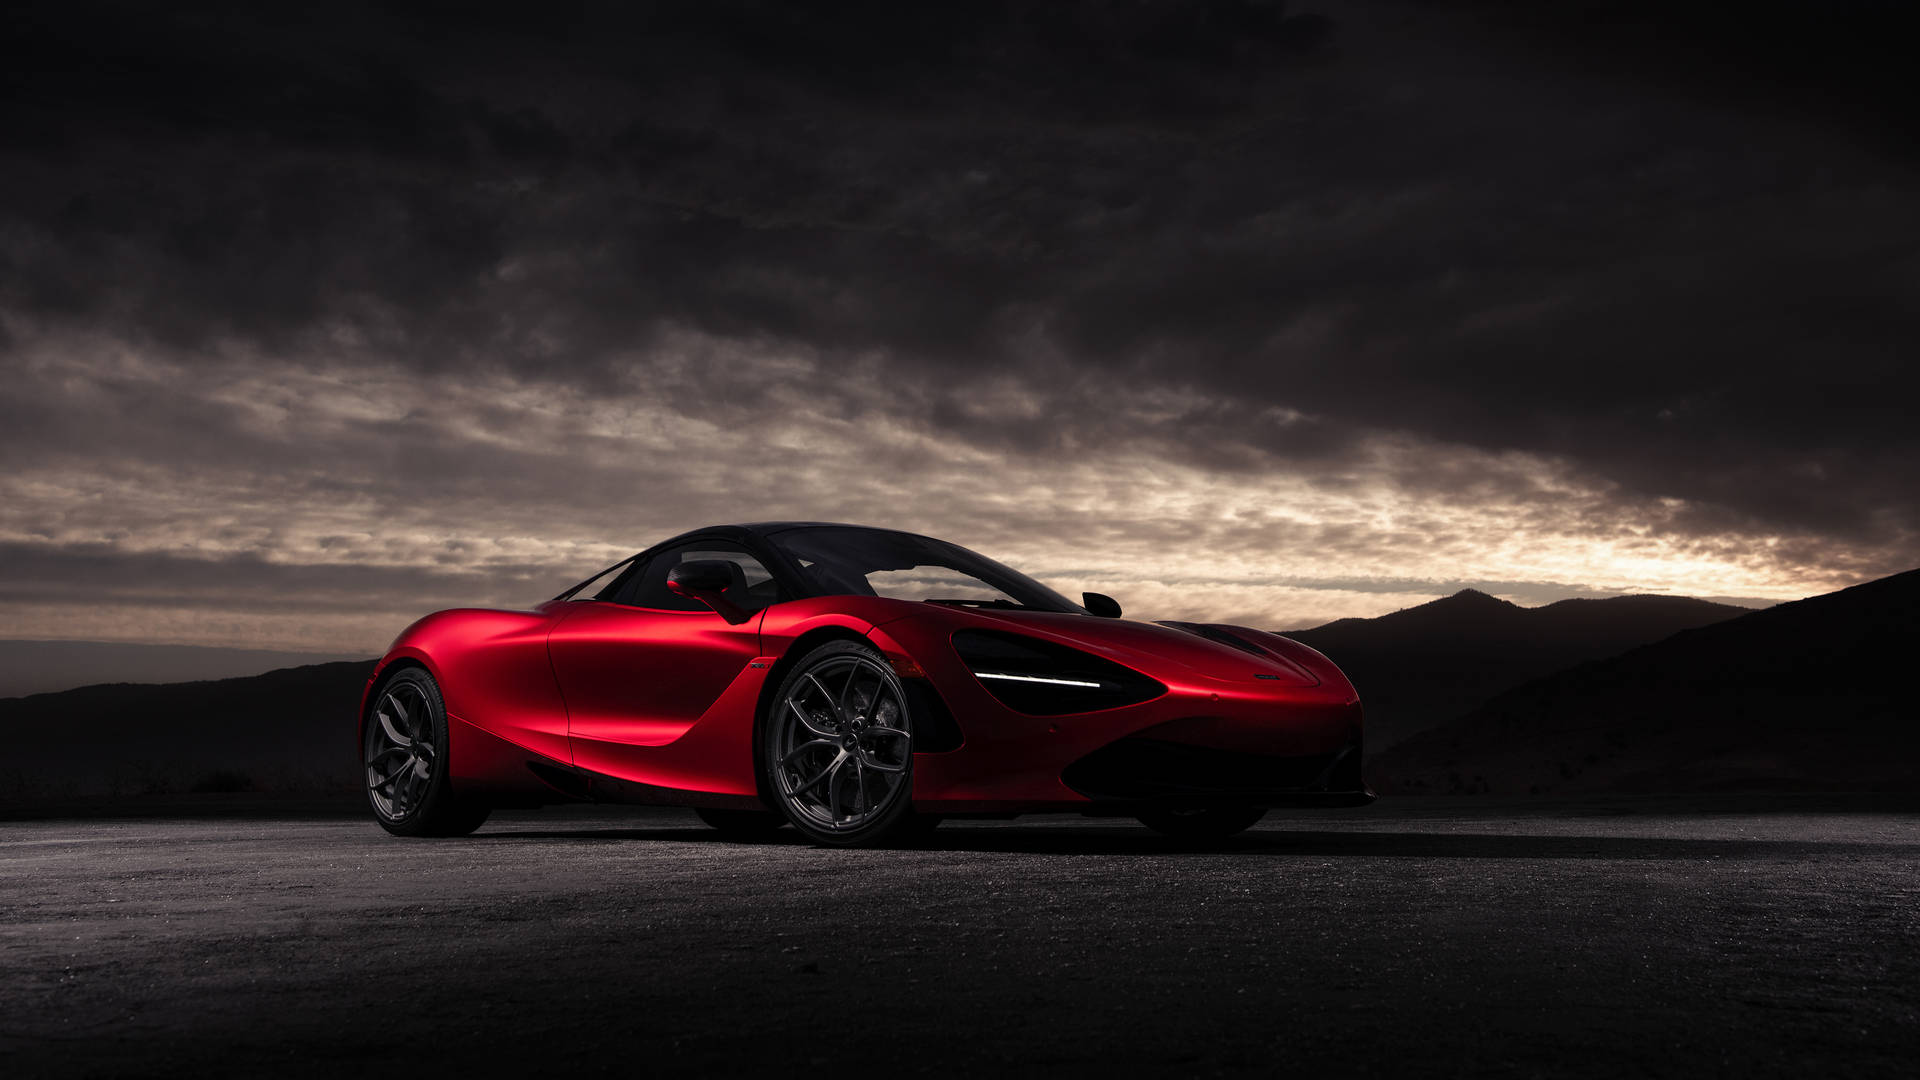 Hình nền McLaren - Hình nền McLaren là một trong những điều không thể thiếu cho những người yêu thích siêu xe. Với những bức ảnh chất lượng cao và khung hình tuyệt đẹp, bạn sẽ bị cuốn hút bởi sự mê hoặc của thương hiệu xe đỉnh cao này.